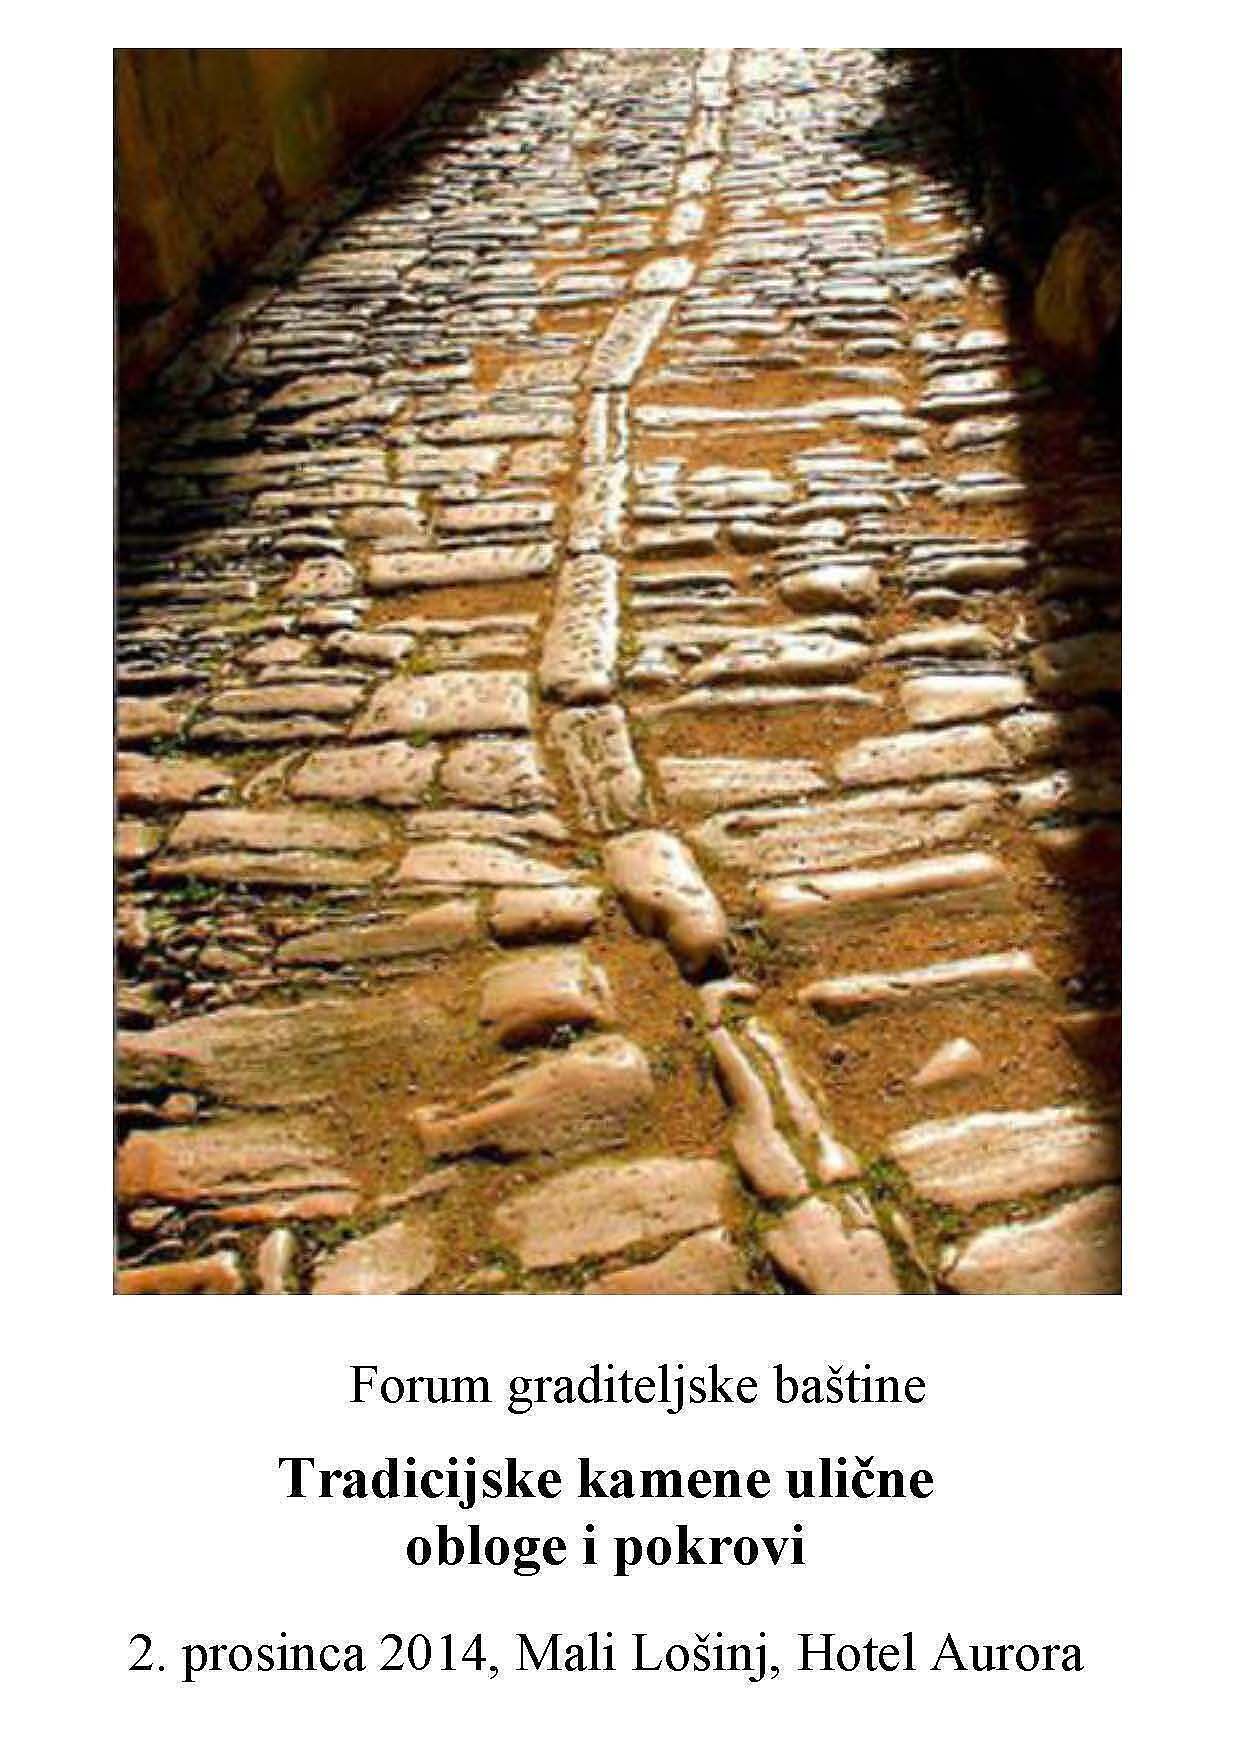 Najava: Forum graditeljske baštine “Tradicijske kamene ulične obloge i pokrovi”